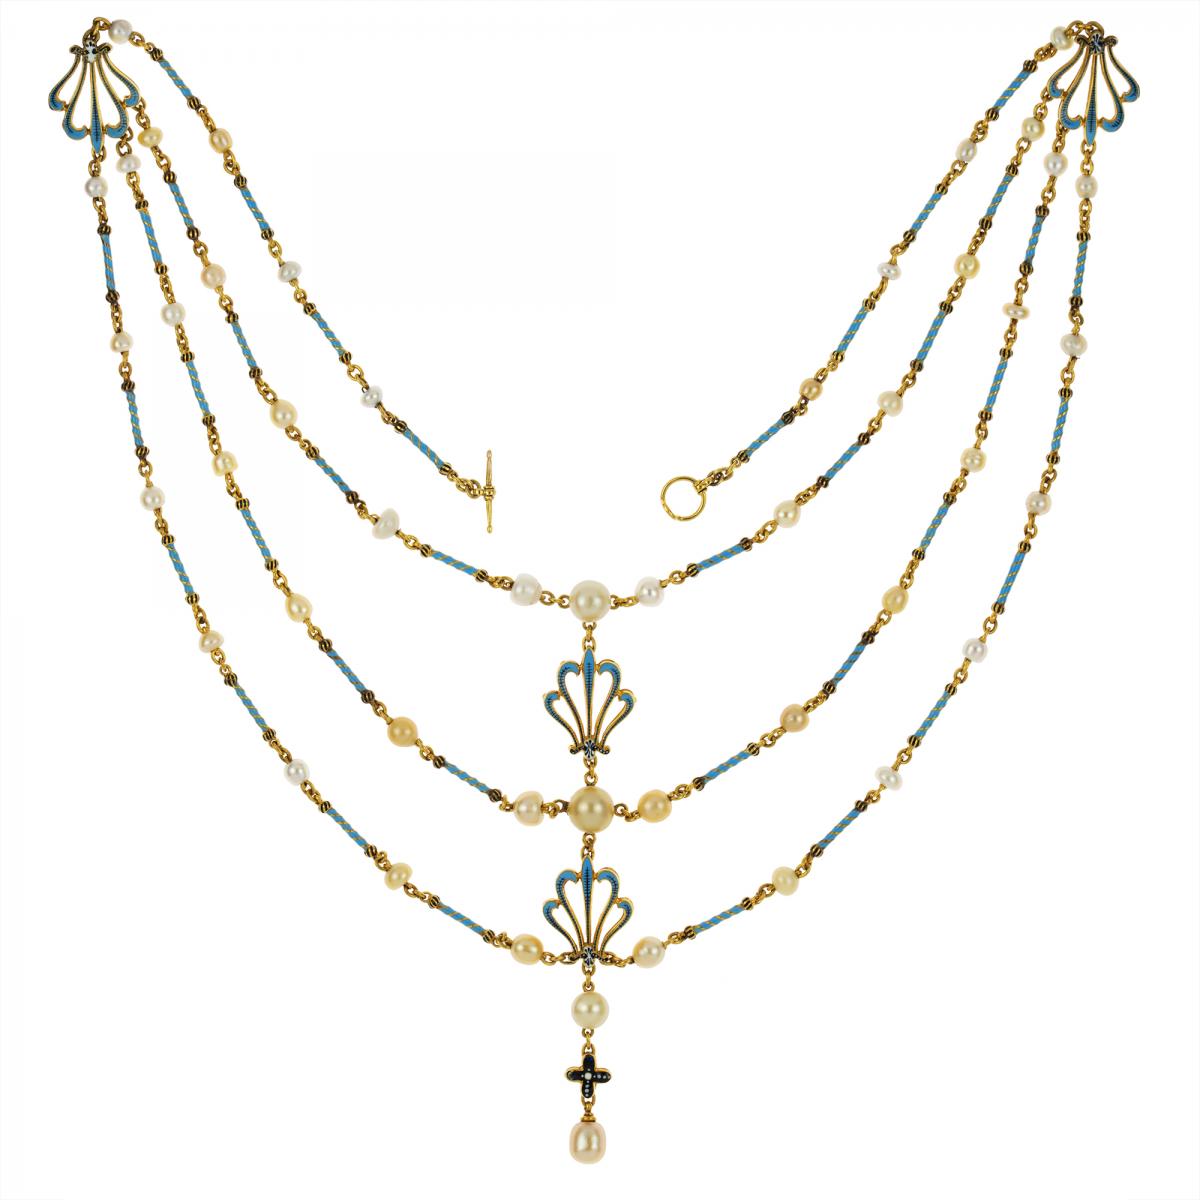 An Important Giuliano necklace, circa 1900